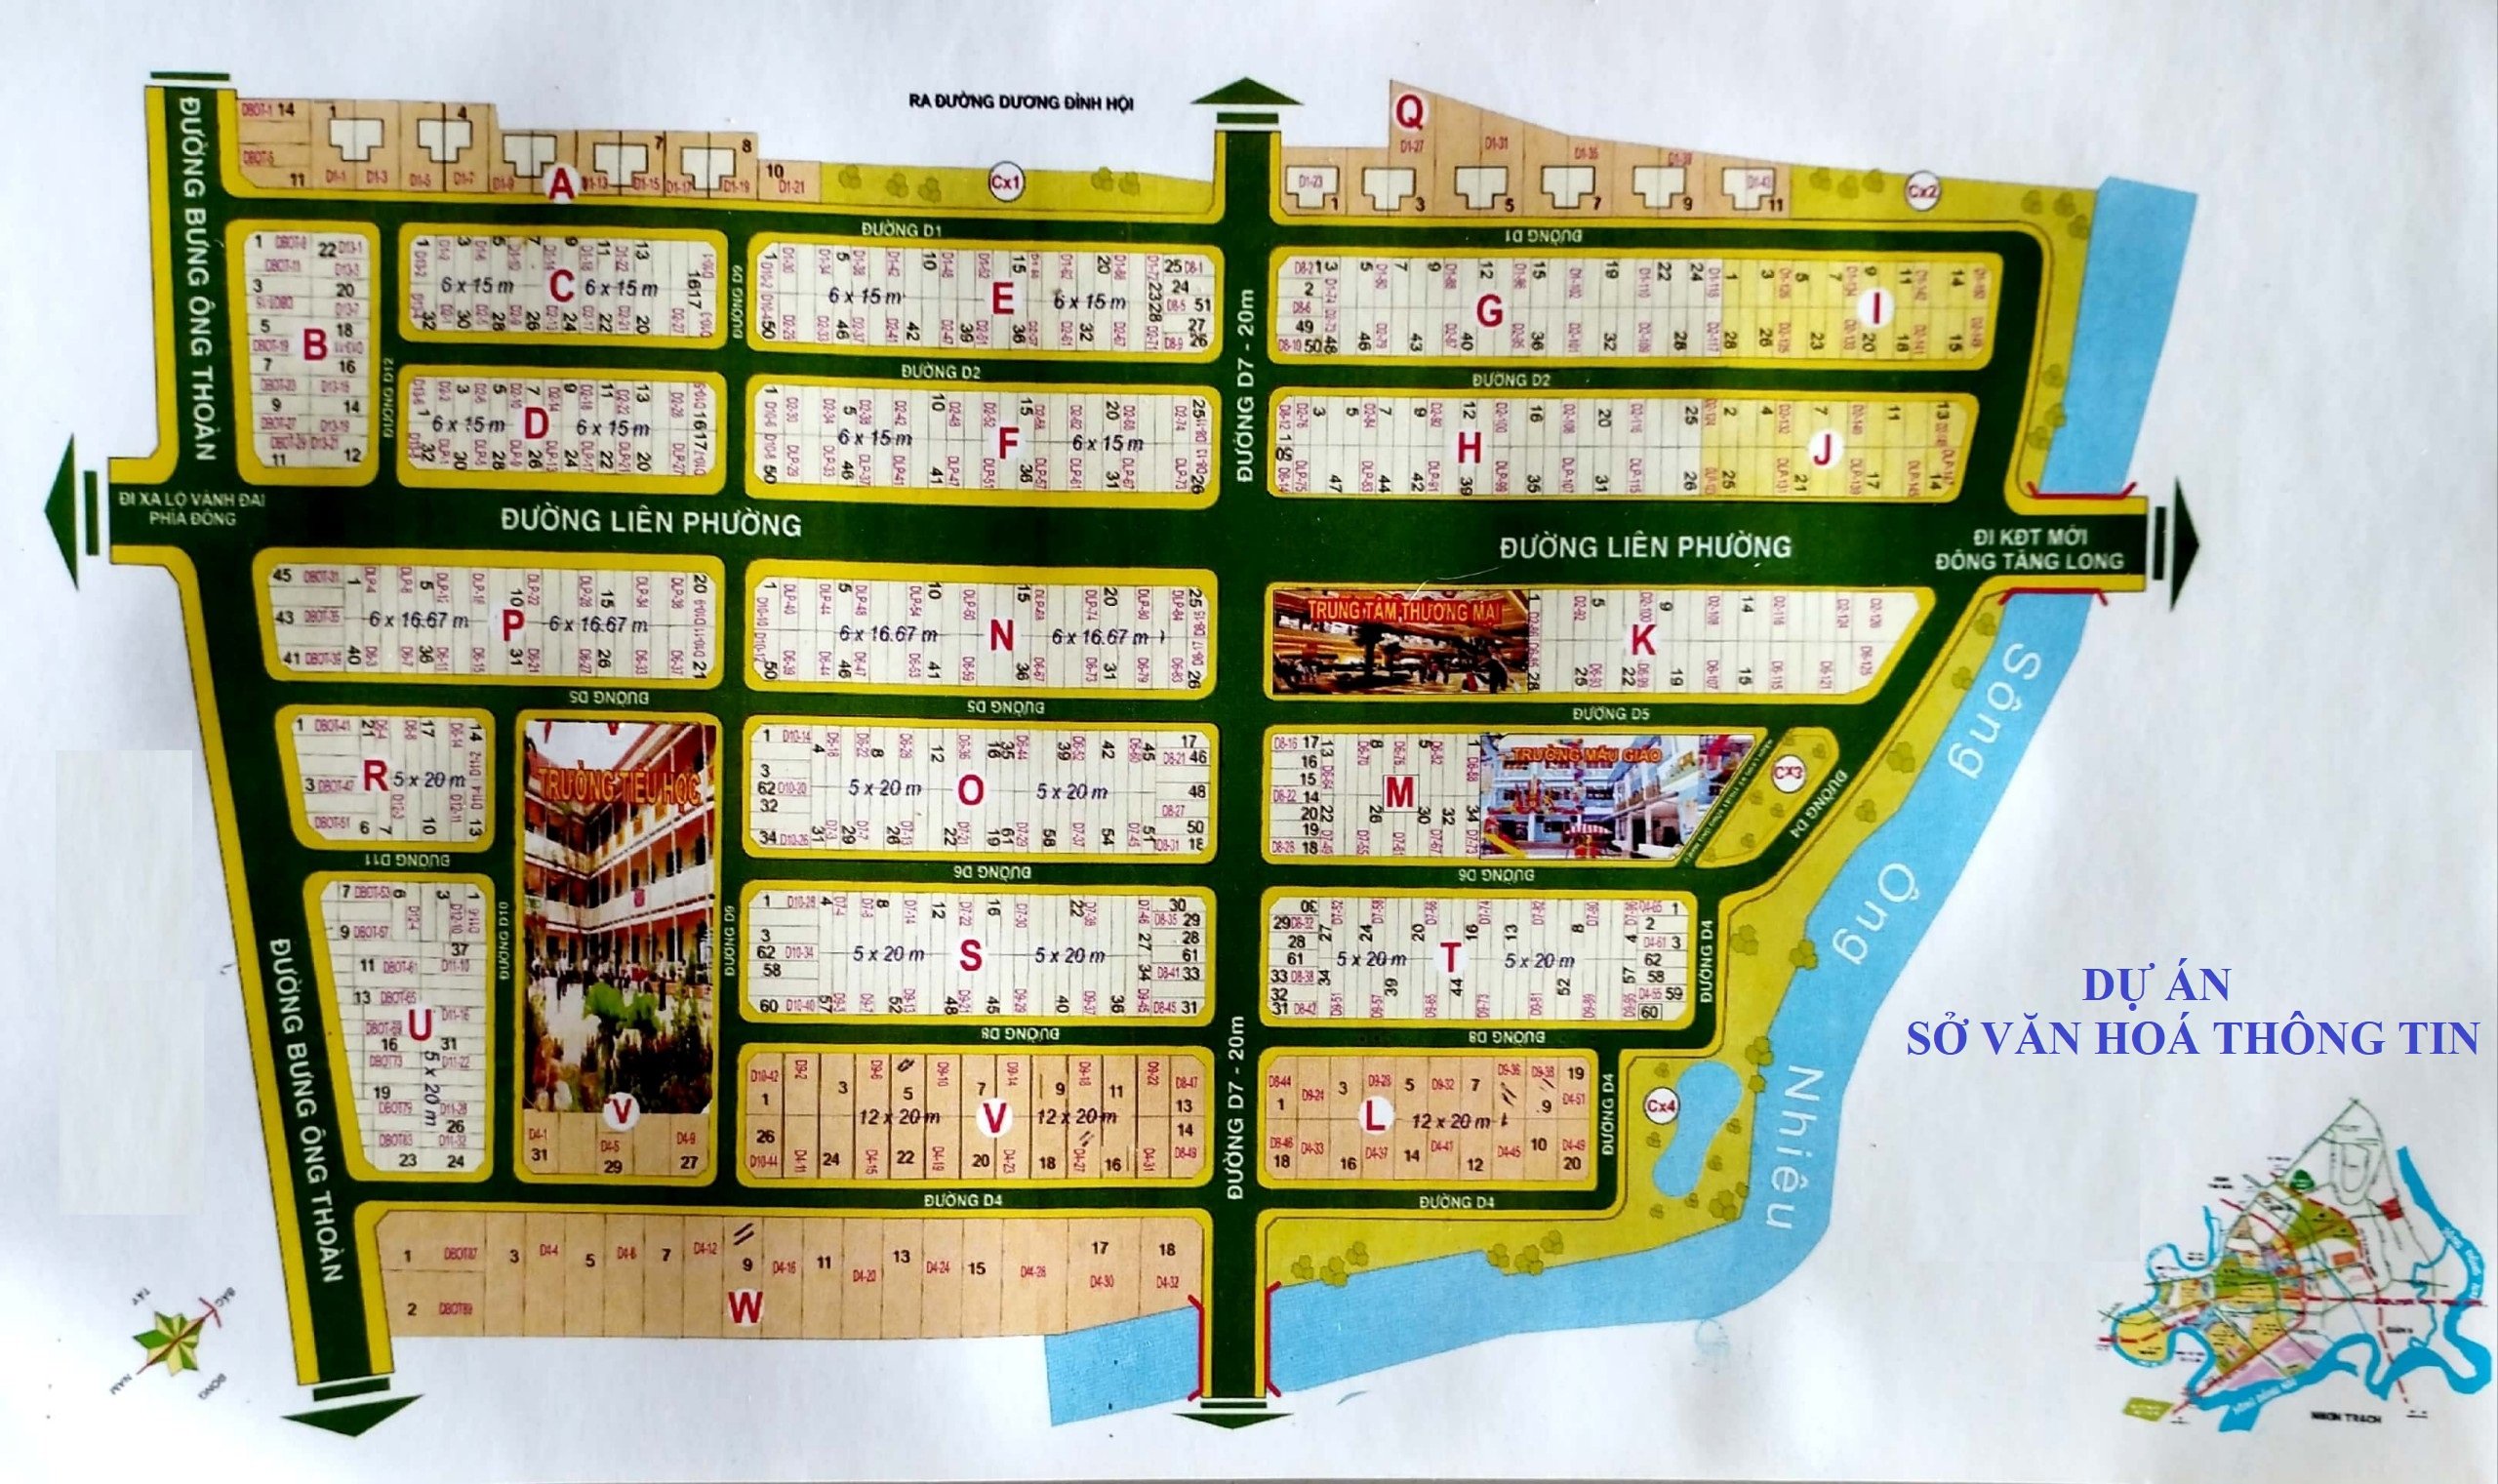 Cần bán 2 nền đất giá tốt dự án cán bộ nhân viên Sở văn hoá thông tin, Phú Hữu, Quận 9